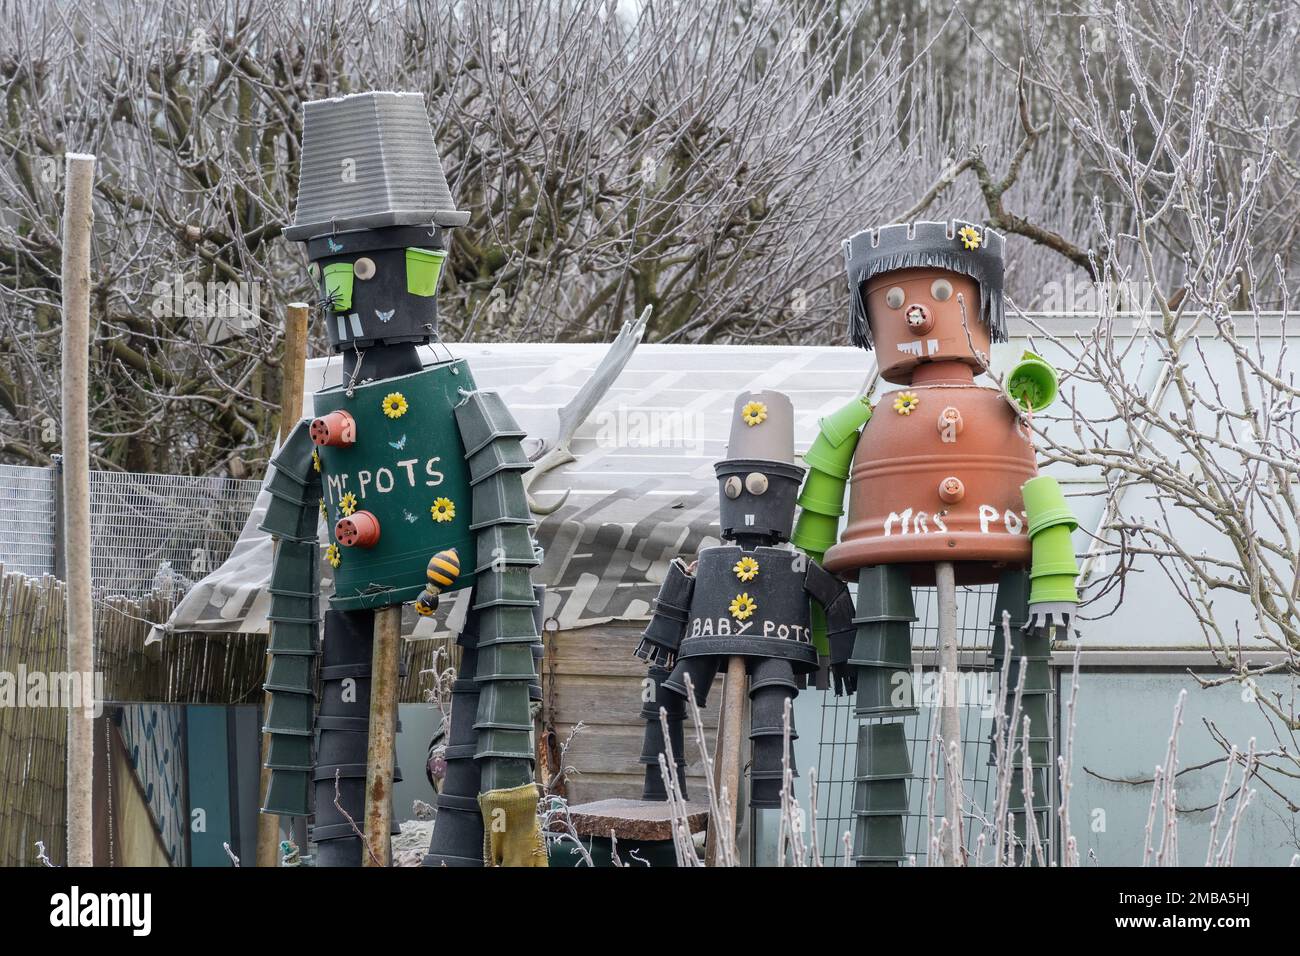 Hommes ou famille de pots de fleurs, personnages faits de pots de fleurs dans un allotissements le jour d'hiver glacial, Angleterre, Royaume-Uni Banque D'Images